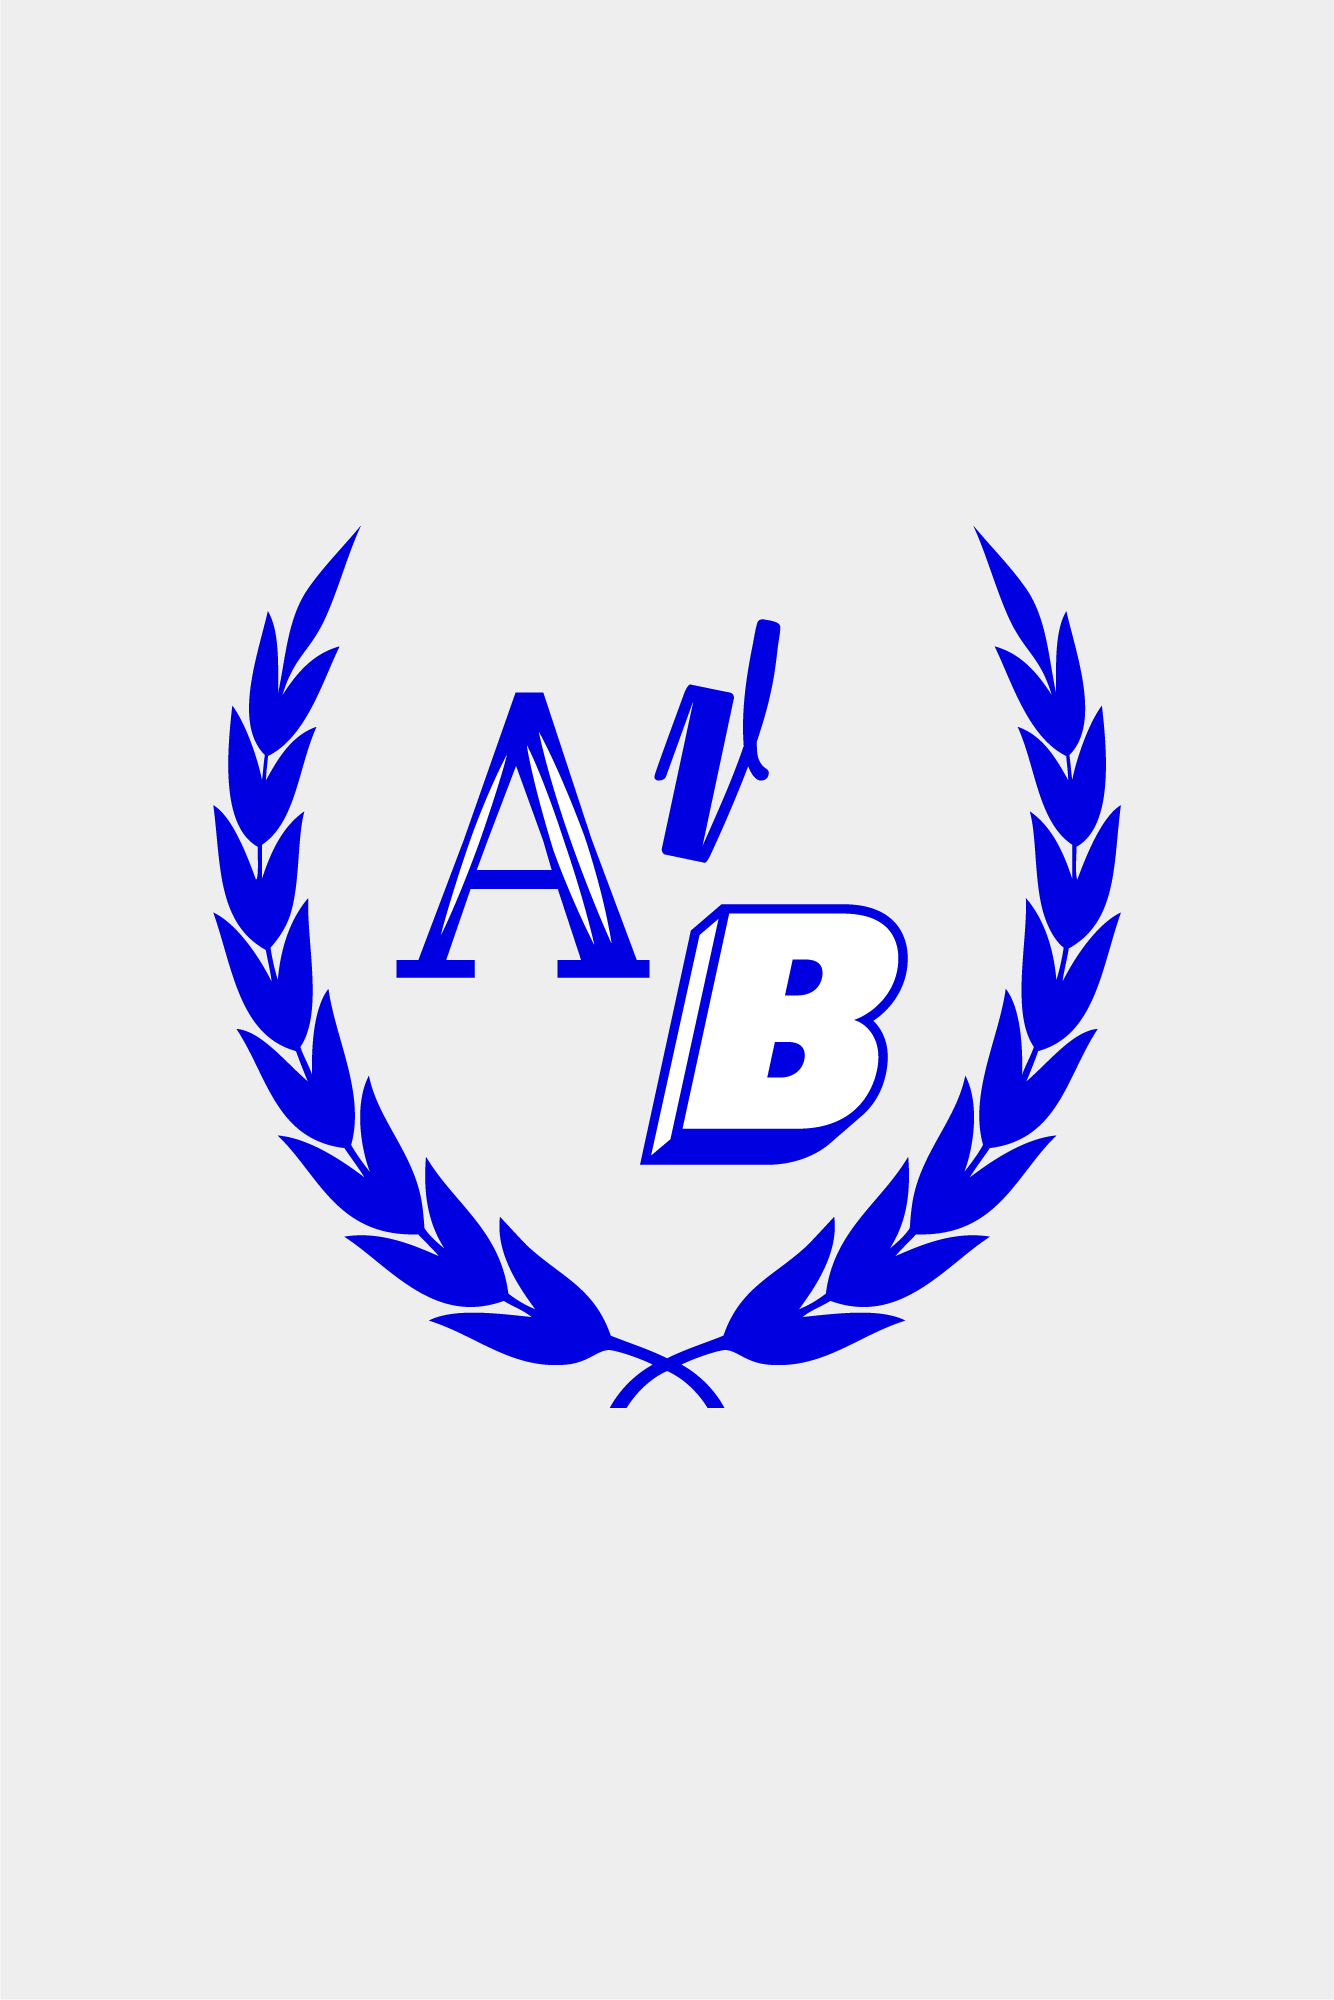 Academie-voor-Beeldvorming-Logo